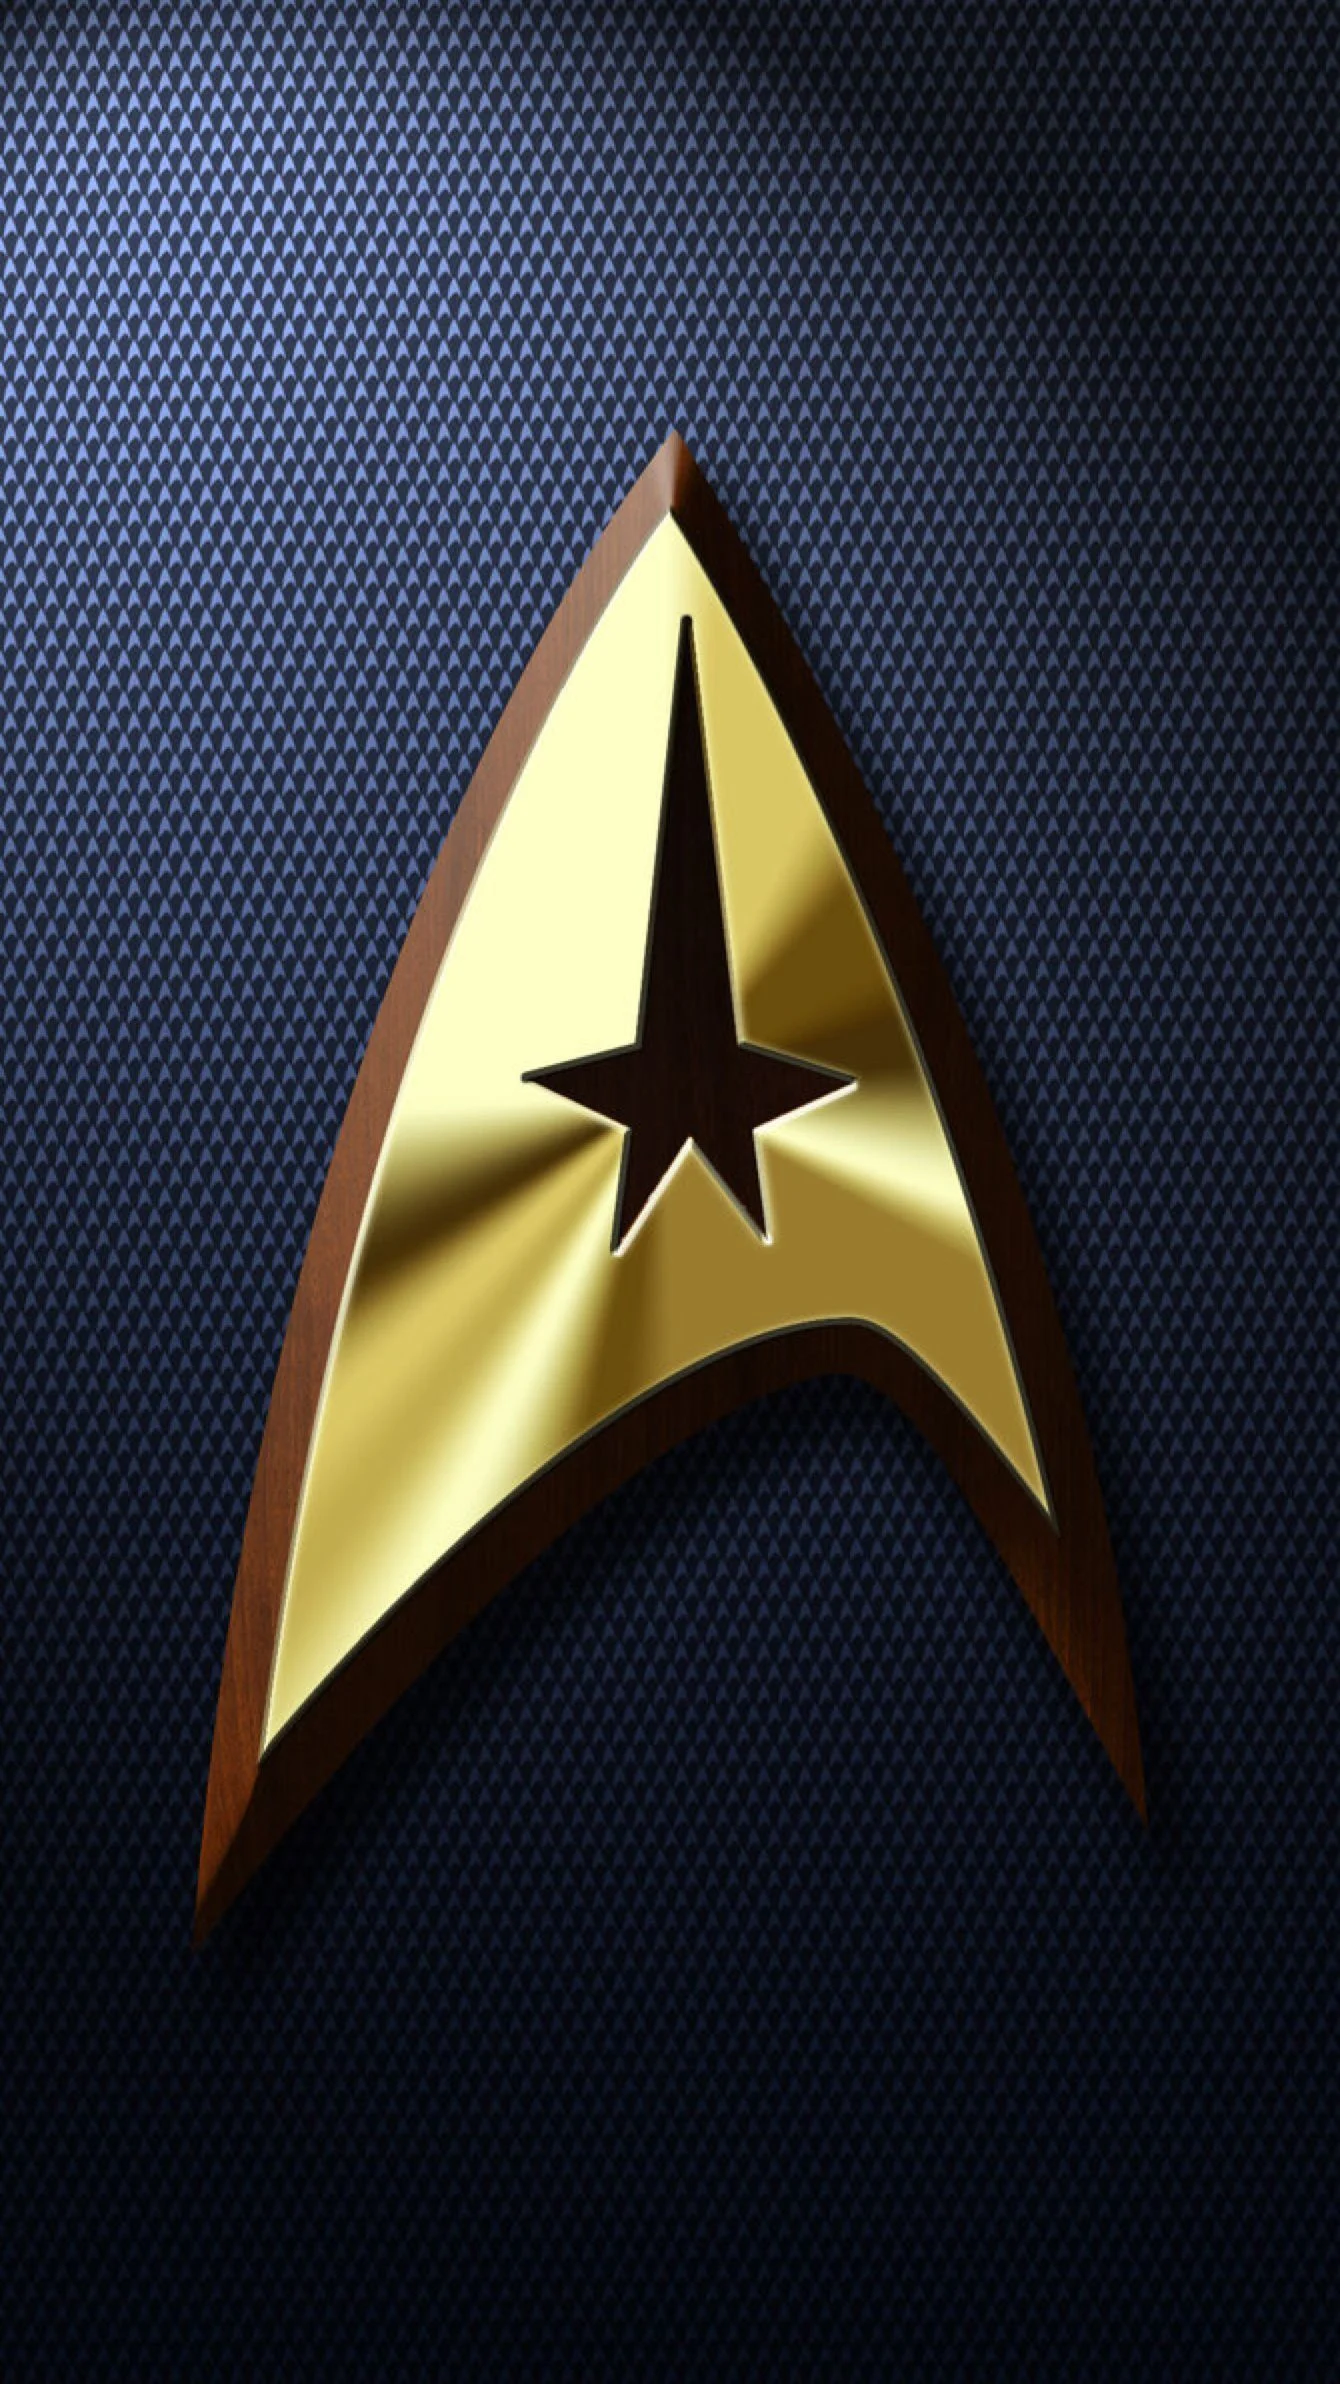 Background Star Trek  Wallpaper